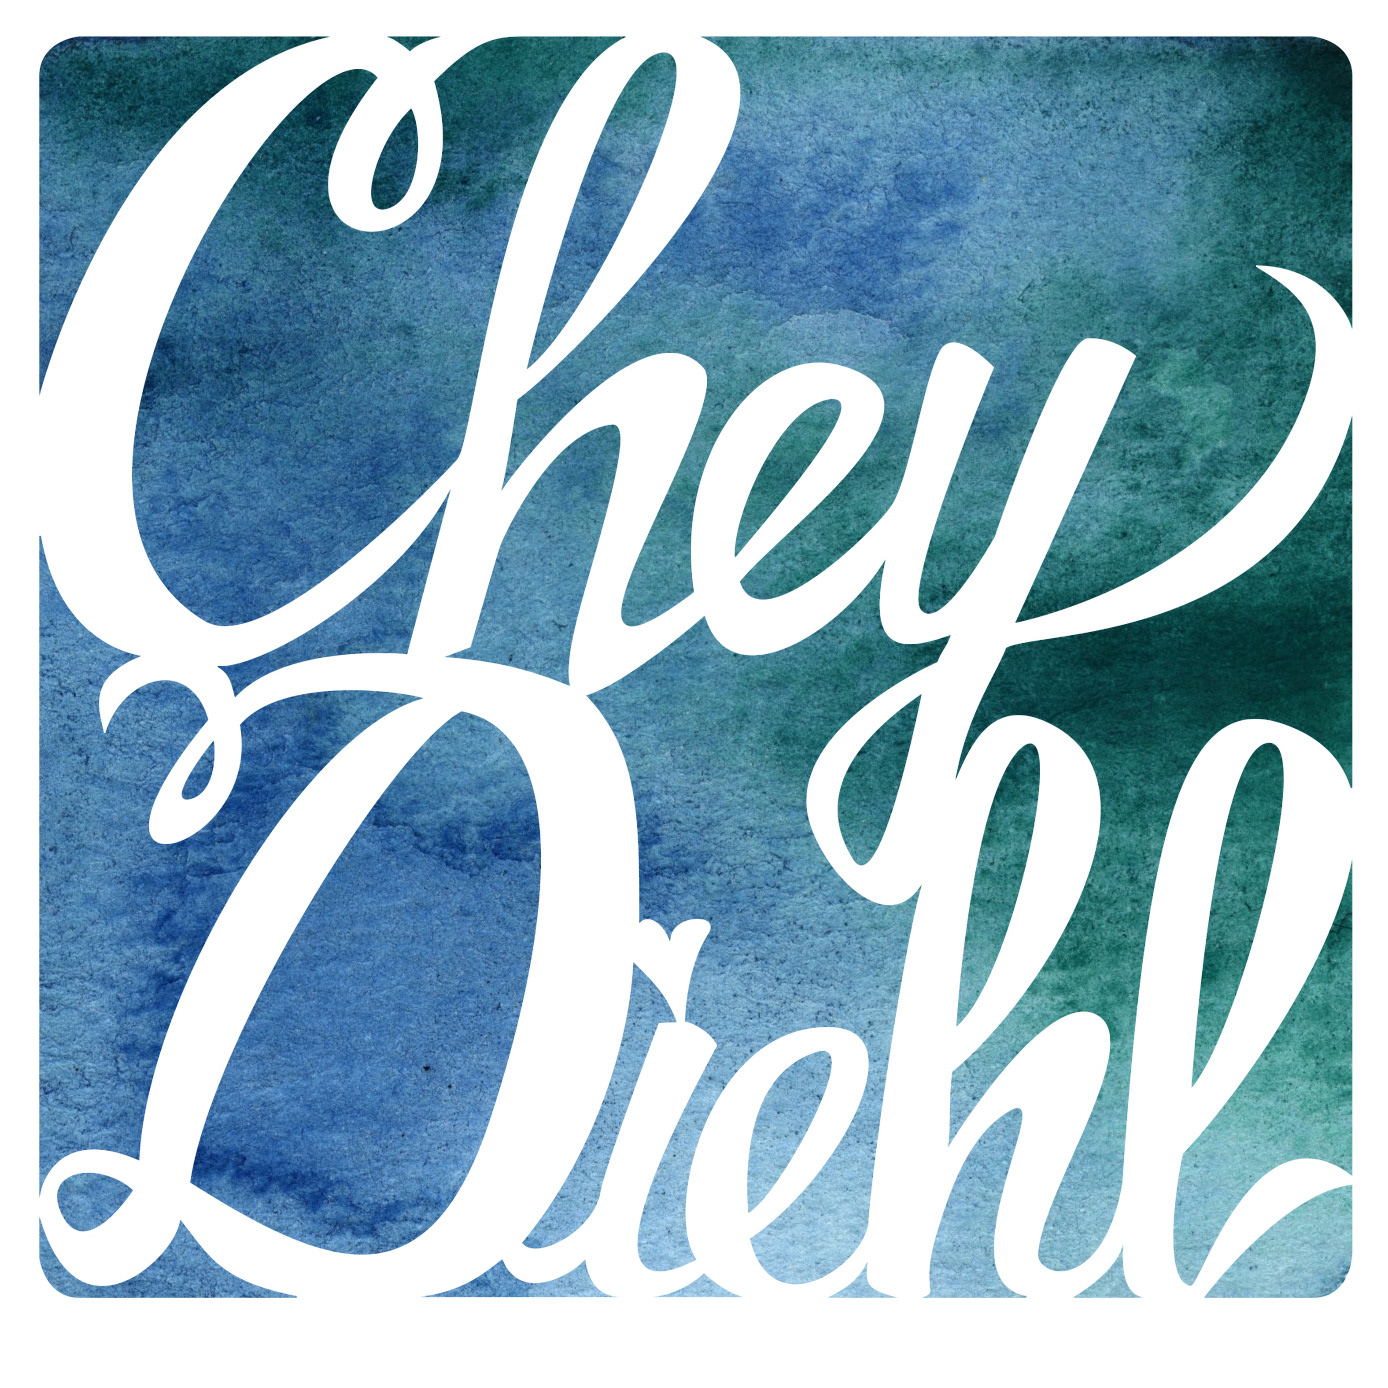 Chey Diehl